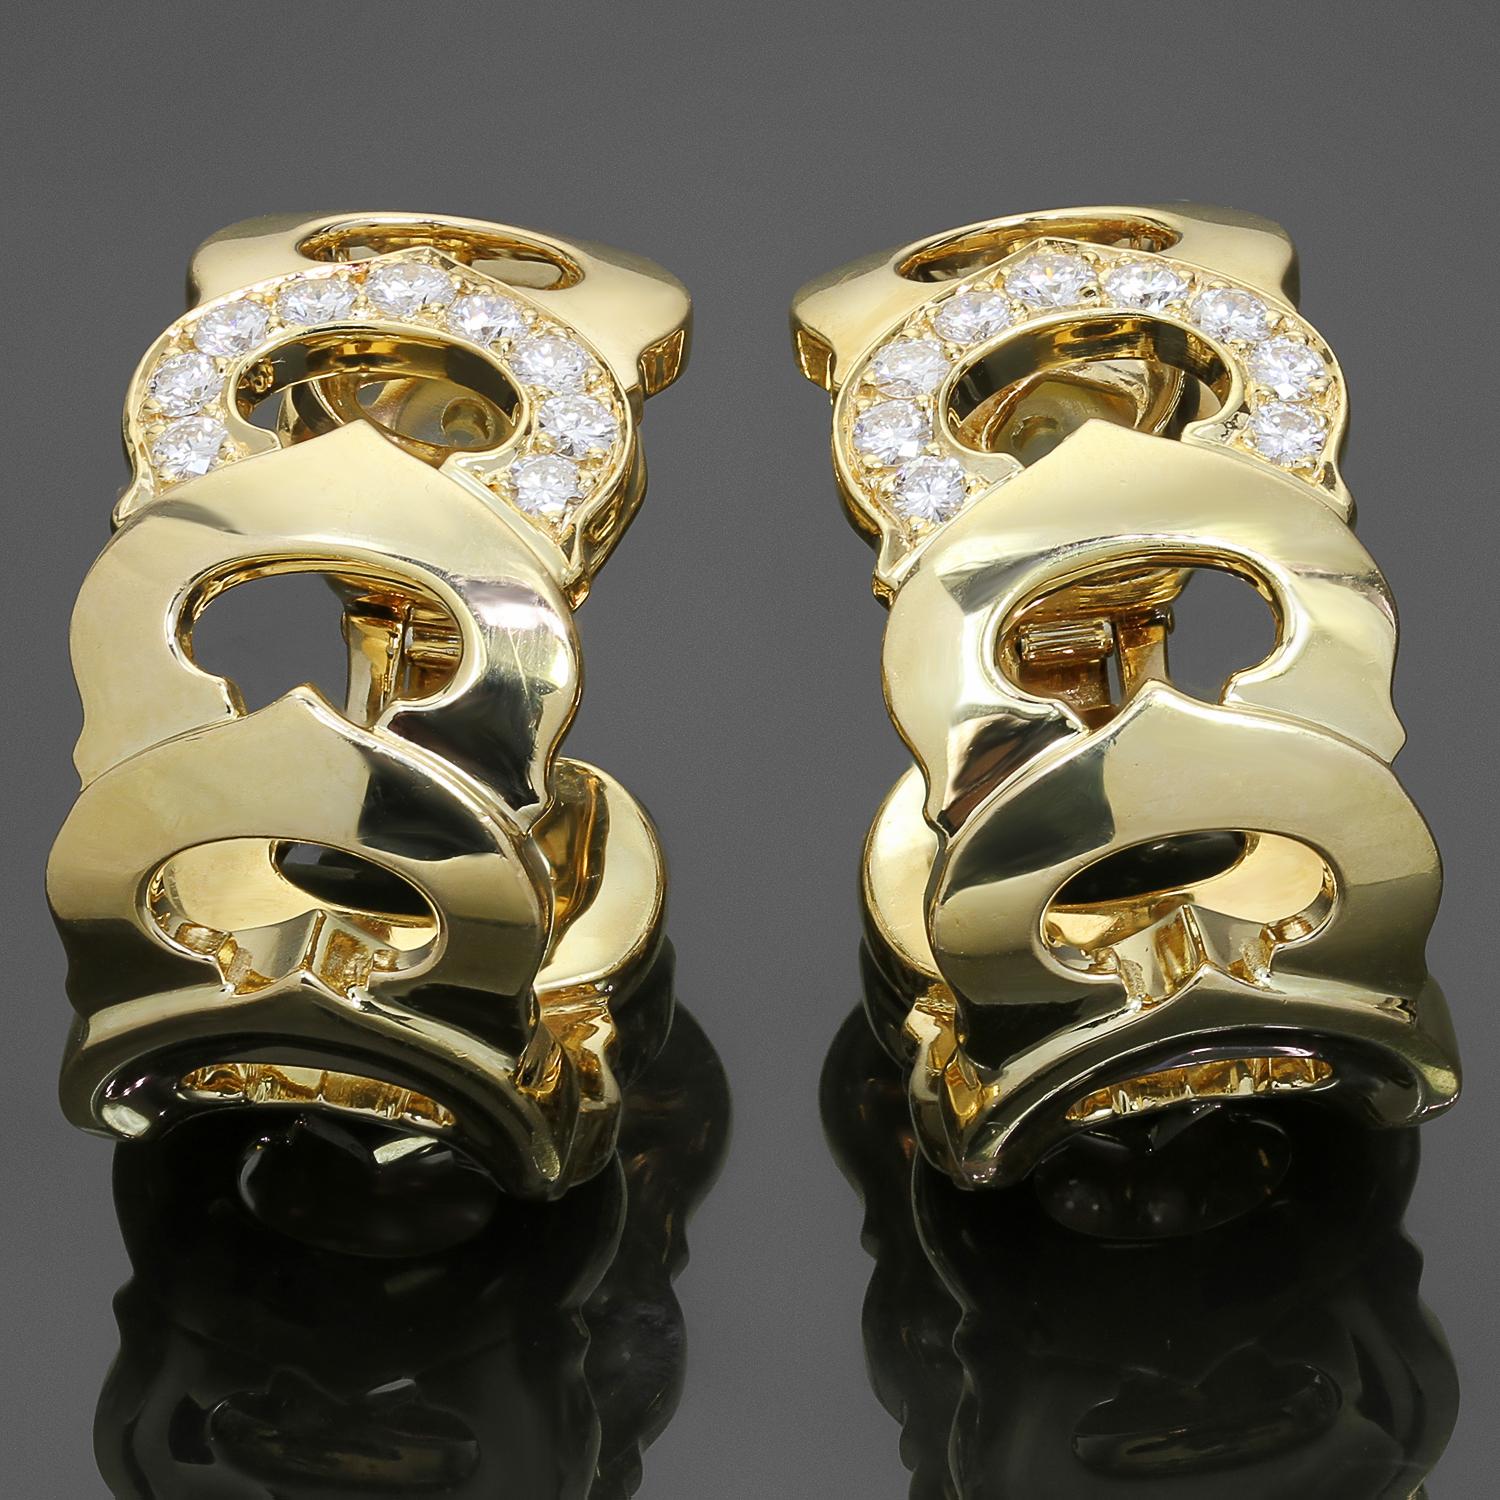 Diese exquisiten, authentischen C De Cartier Ohrringe sind aus 18 Karat Gelbgold gefertigt und mit runden, brillanten D-E-F VVS1-VVS2 Diamanten mit einem geschätzten Gewicht von 1,0 Karat besetzt. Hergestellt in Frankreich in den 1990er Jahren.